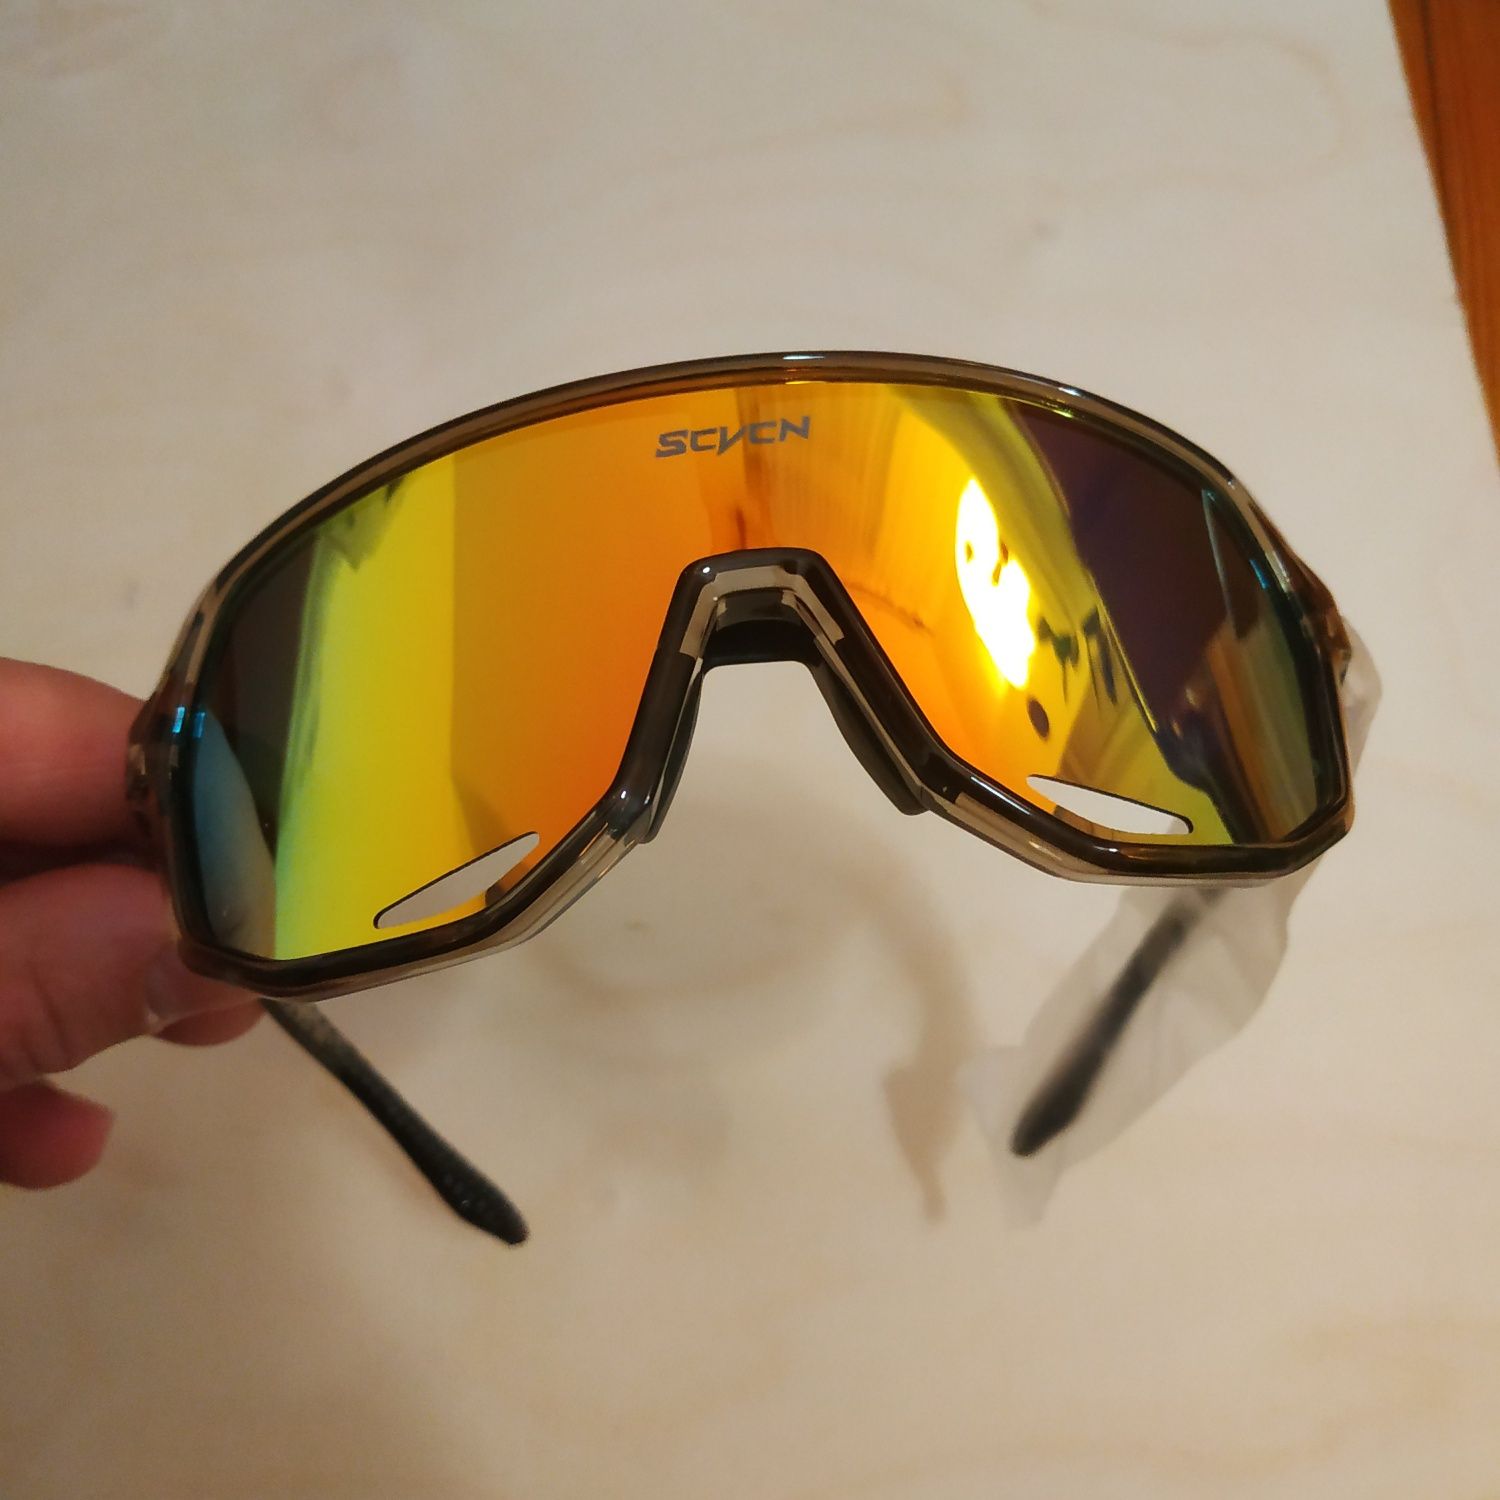 Pewnej jakości okulary polaryzacyjne na rower alpinizm wędkarstwo itp.